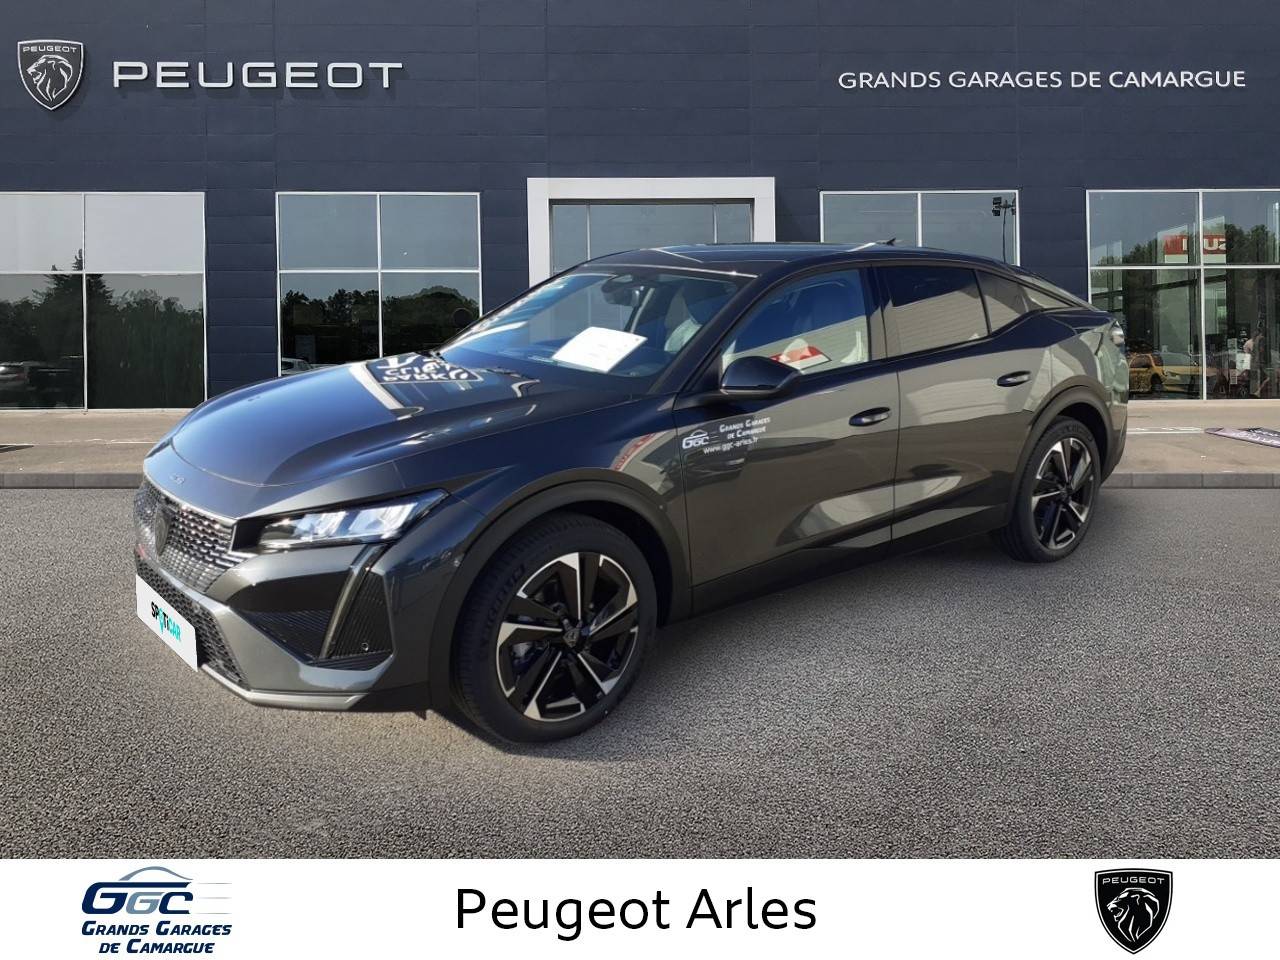 PEUGEOT 408 | 408 PureTech 130 ch S&S EAT8 occasion - Peugeot Arles